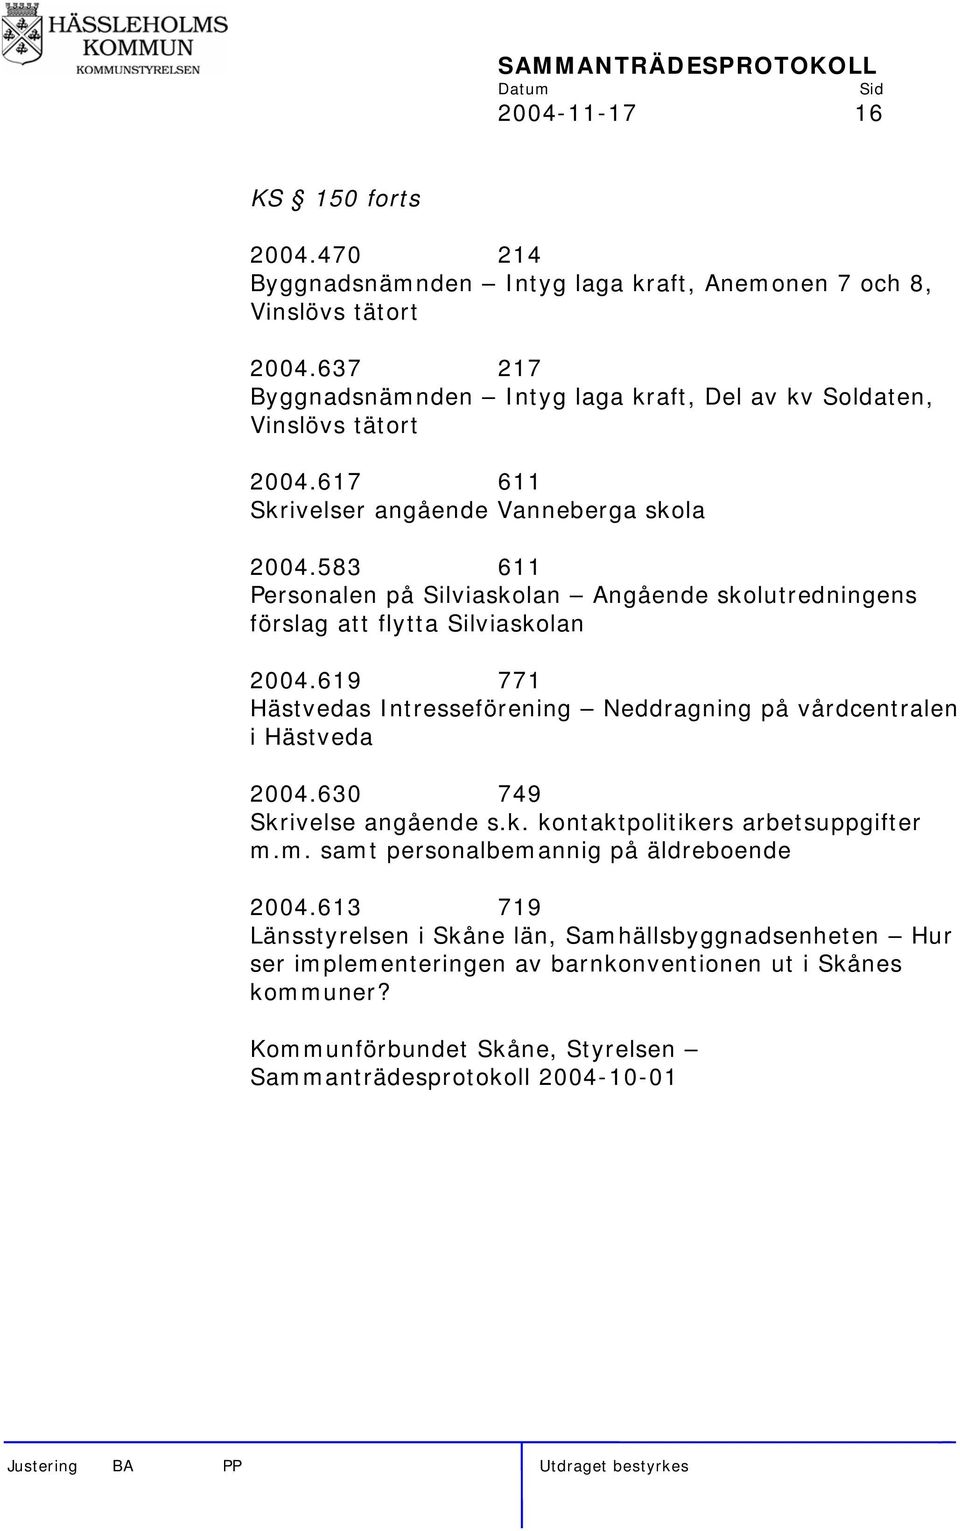 583 611 Personalen på Silviaskolan Angående skolutredningens förslag att flytta Silviaskolan 2004.619 771 Hästvedas Intresseförening Neddragning på vårdcentralen i Hästveda 2004.